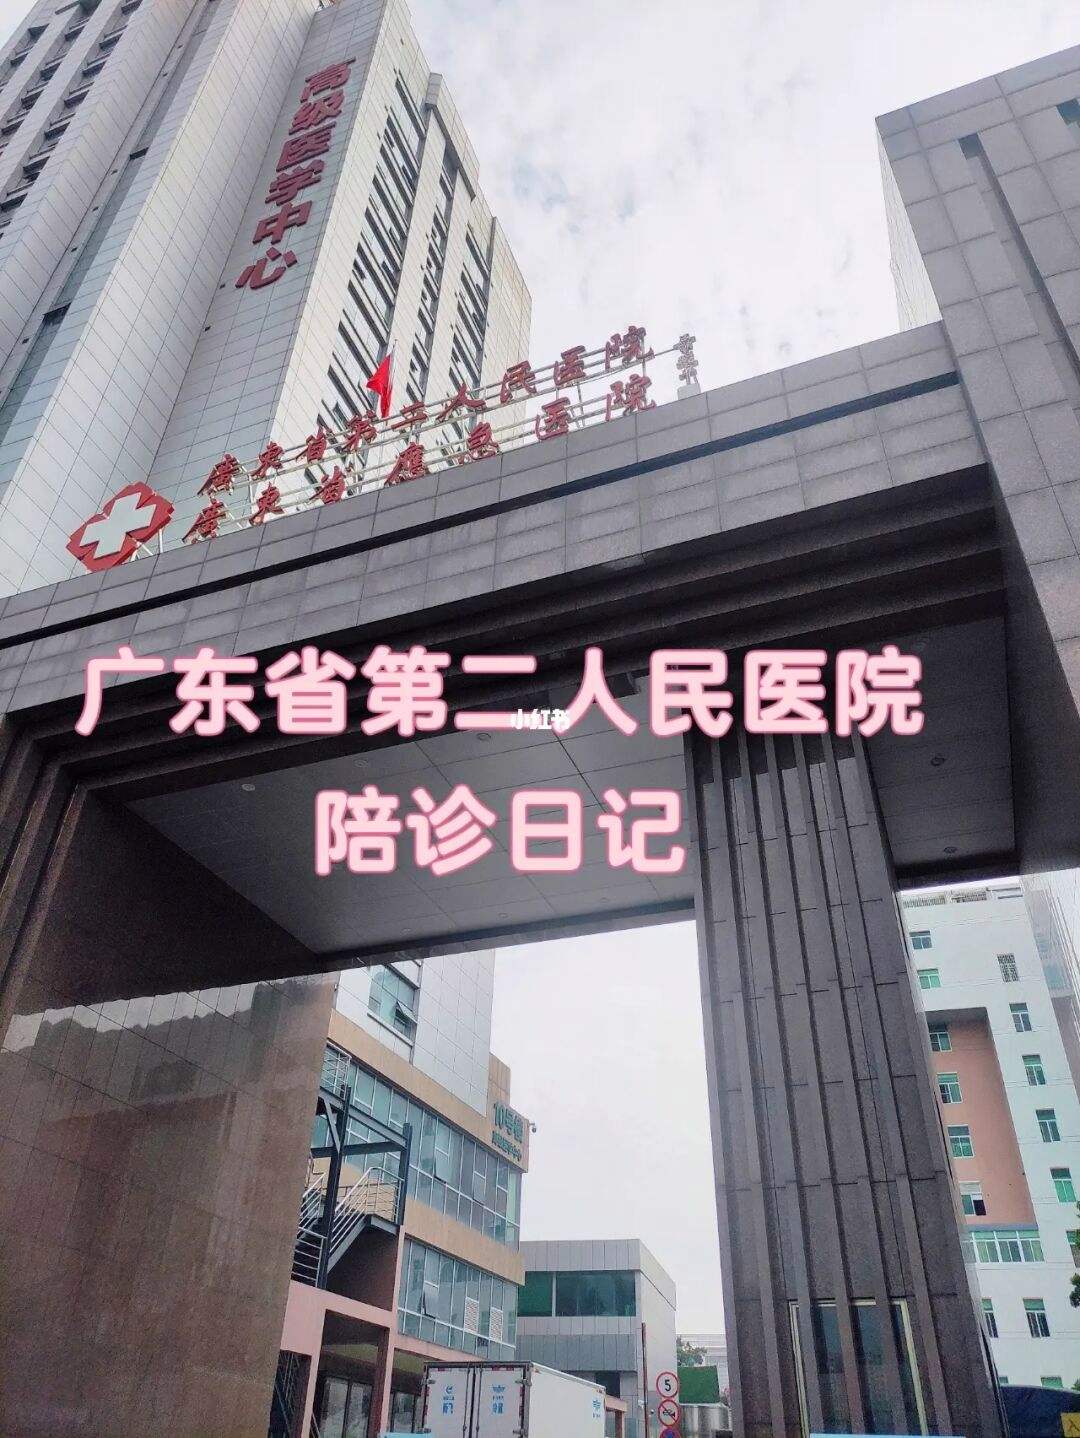 关于广州医科大学附属第三医院医院跑腿陪诊挂号，专家会诊住院协调的信息